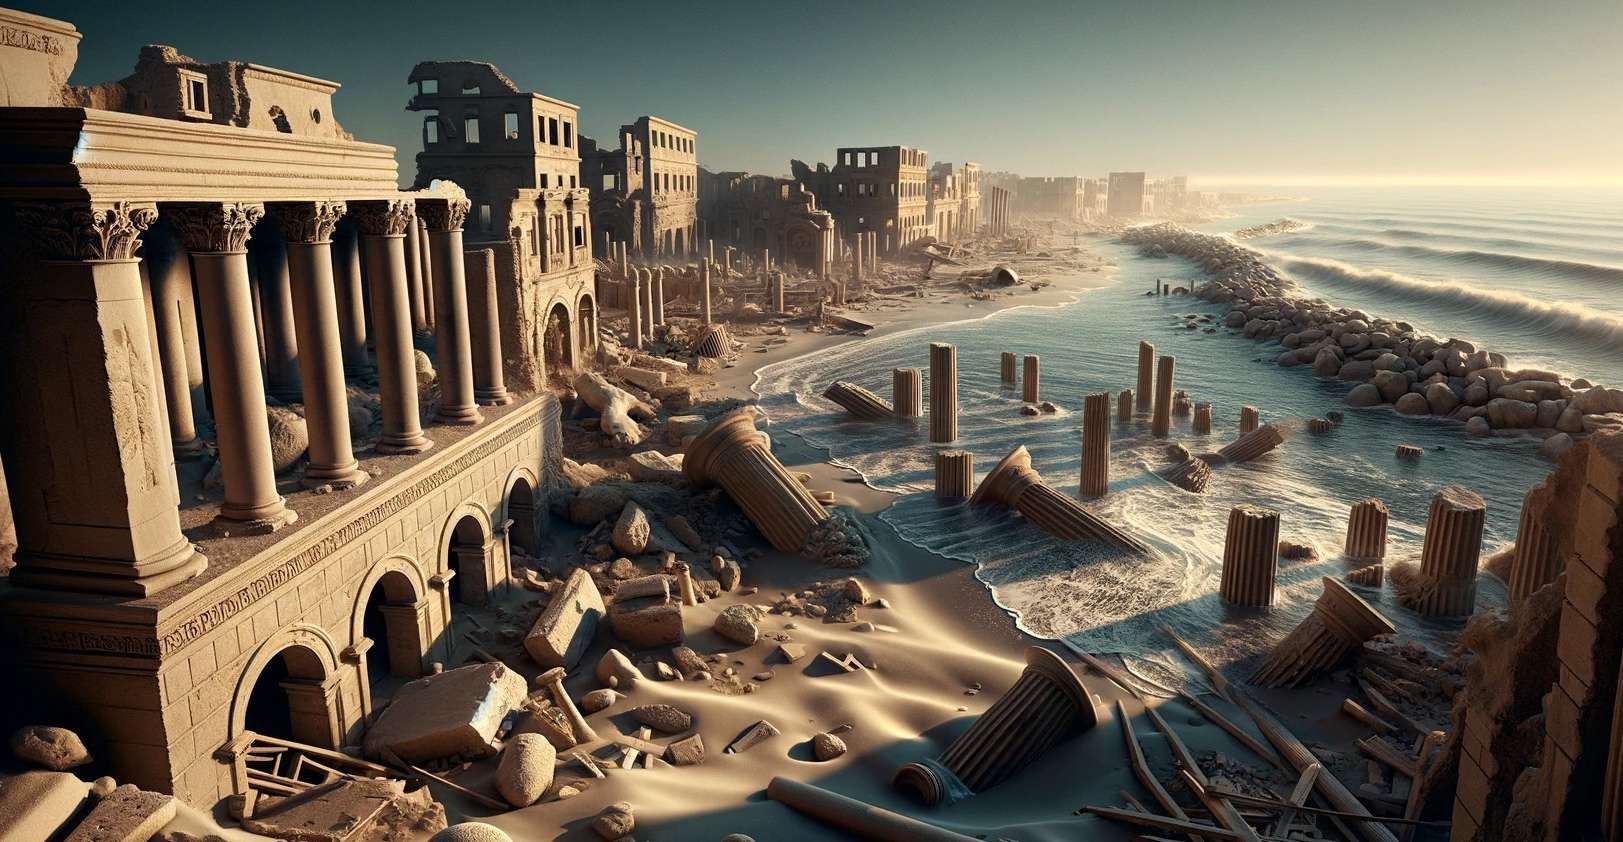 Un tsunami a dévasté 800 km de côte dans cette région de la Méditerranée il y a 1 600 ans !